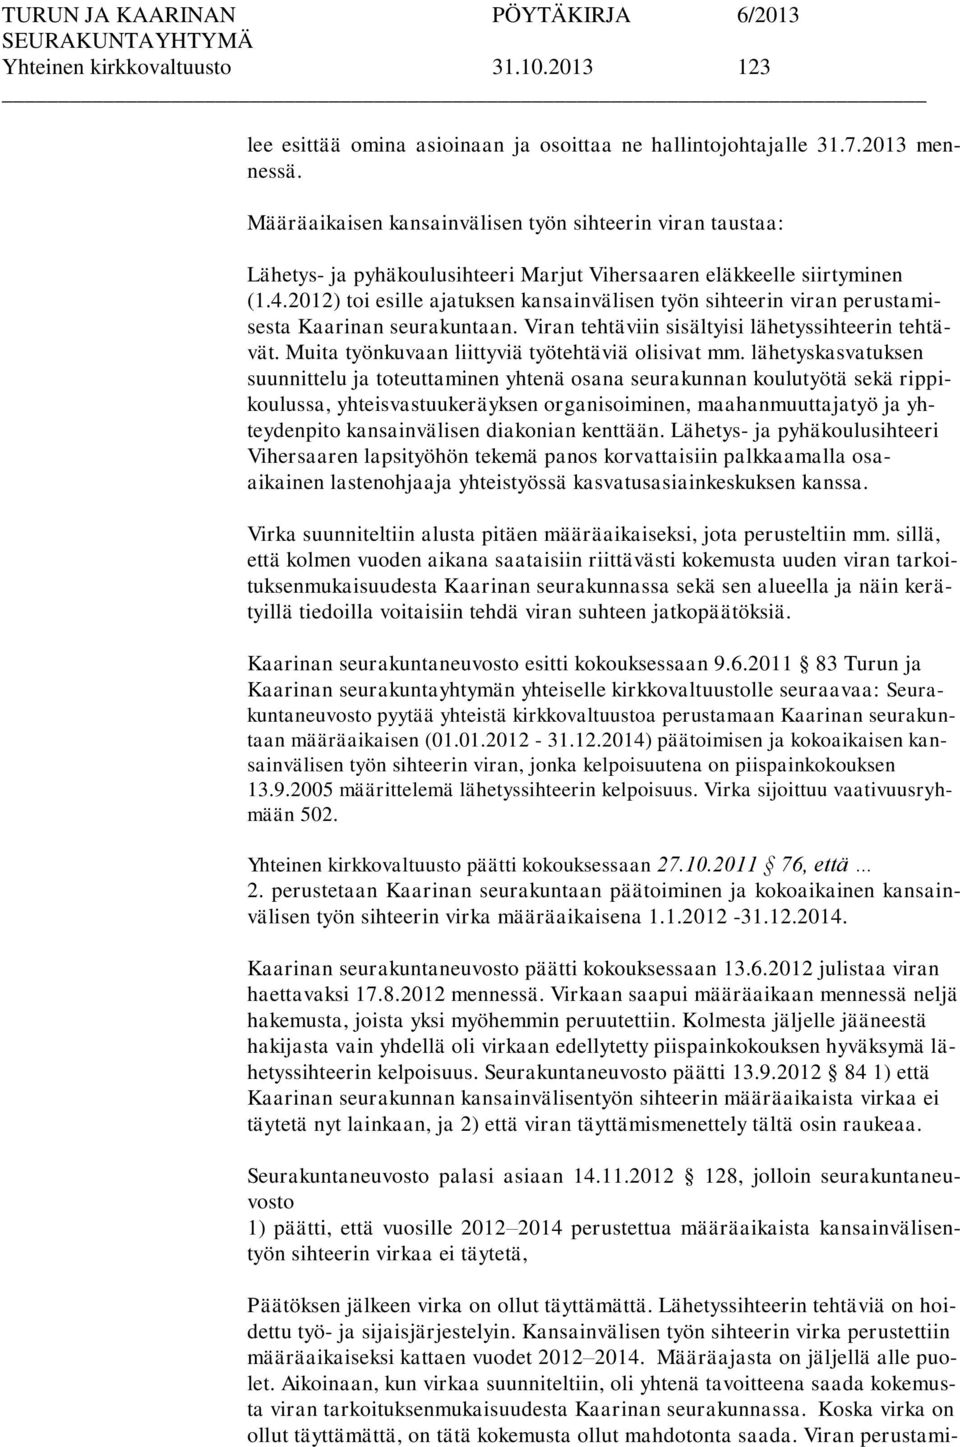 2012) toi esille ajatuksen kansainvälisen työn sihteerin viran perustamisesta Kaarinan seurakuntaan. Viran tehtäviin sisältyisi lähetyssihteerin tehtävät.